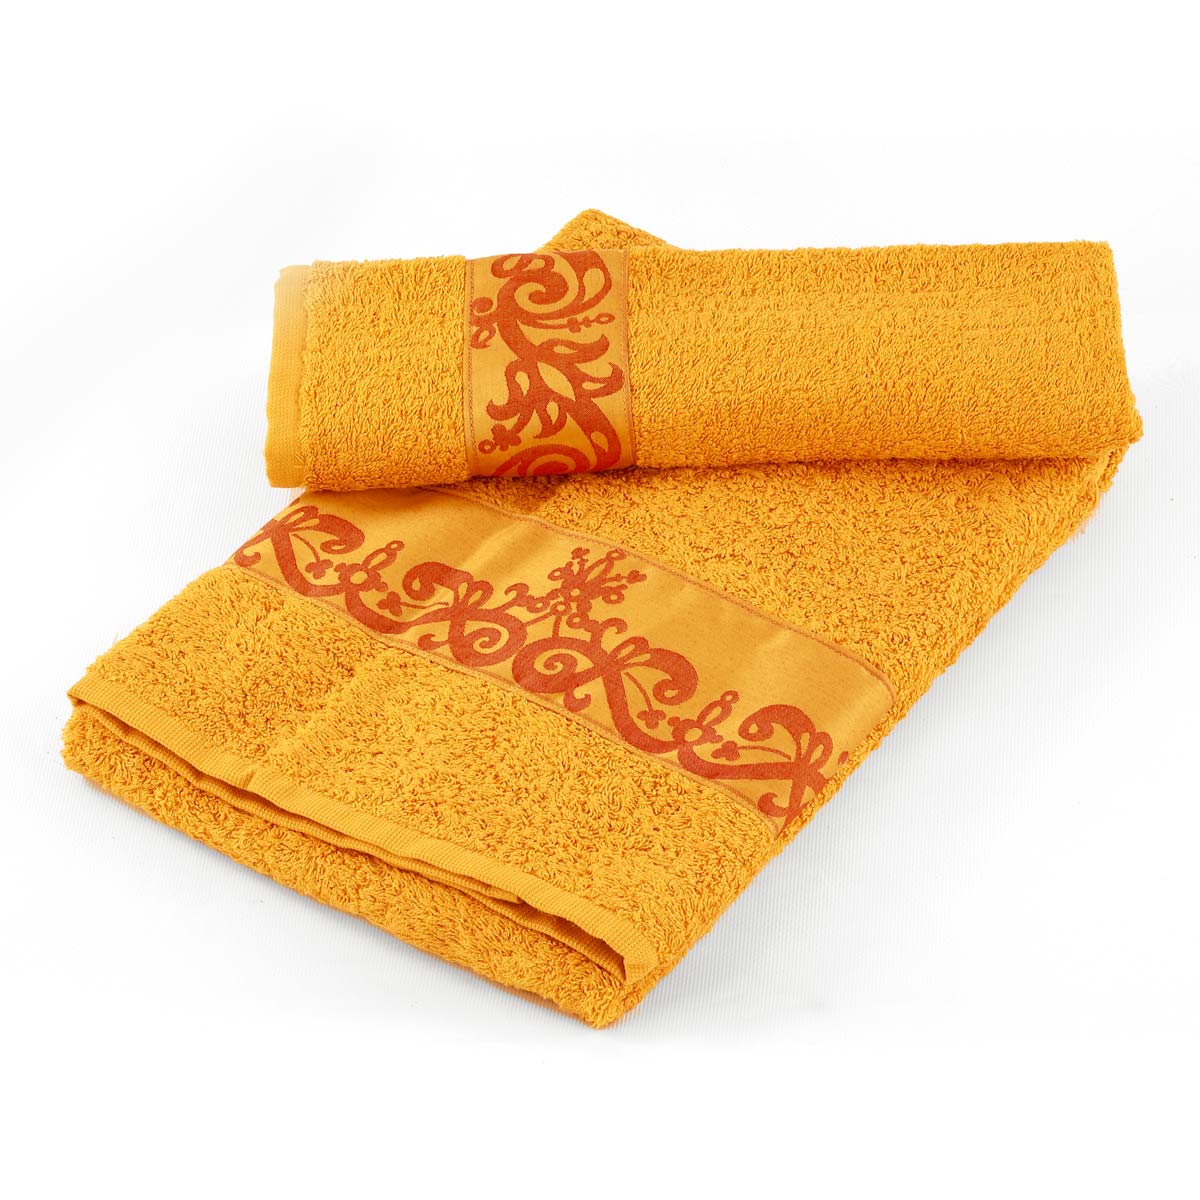 Coppia asciugamani bagno di colore senape con balza in raso - Marabò